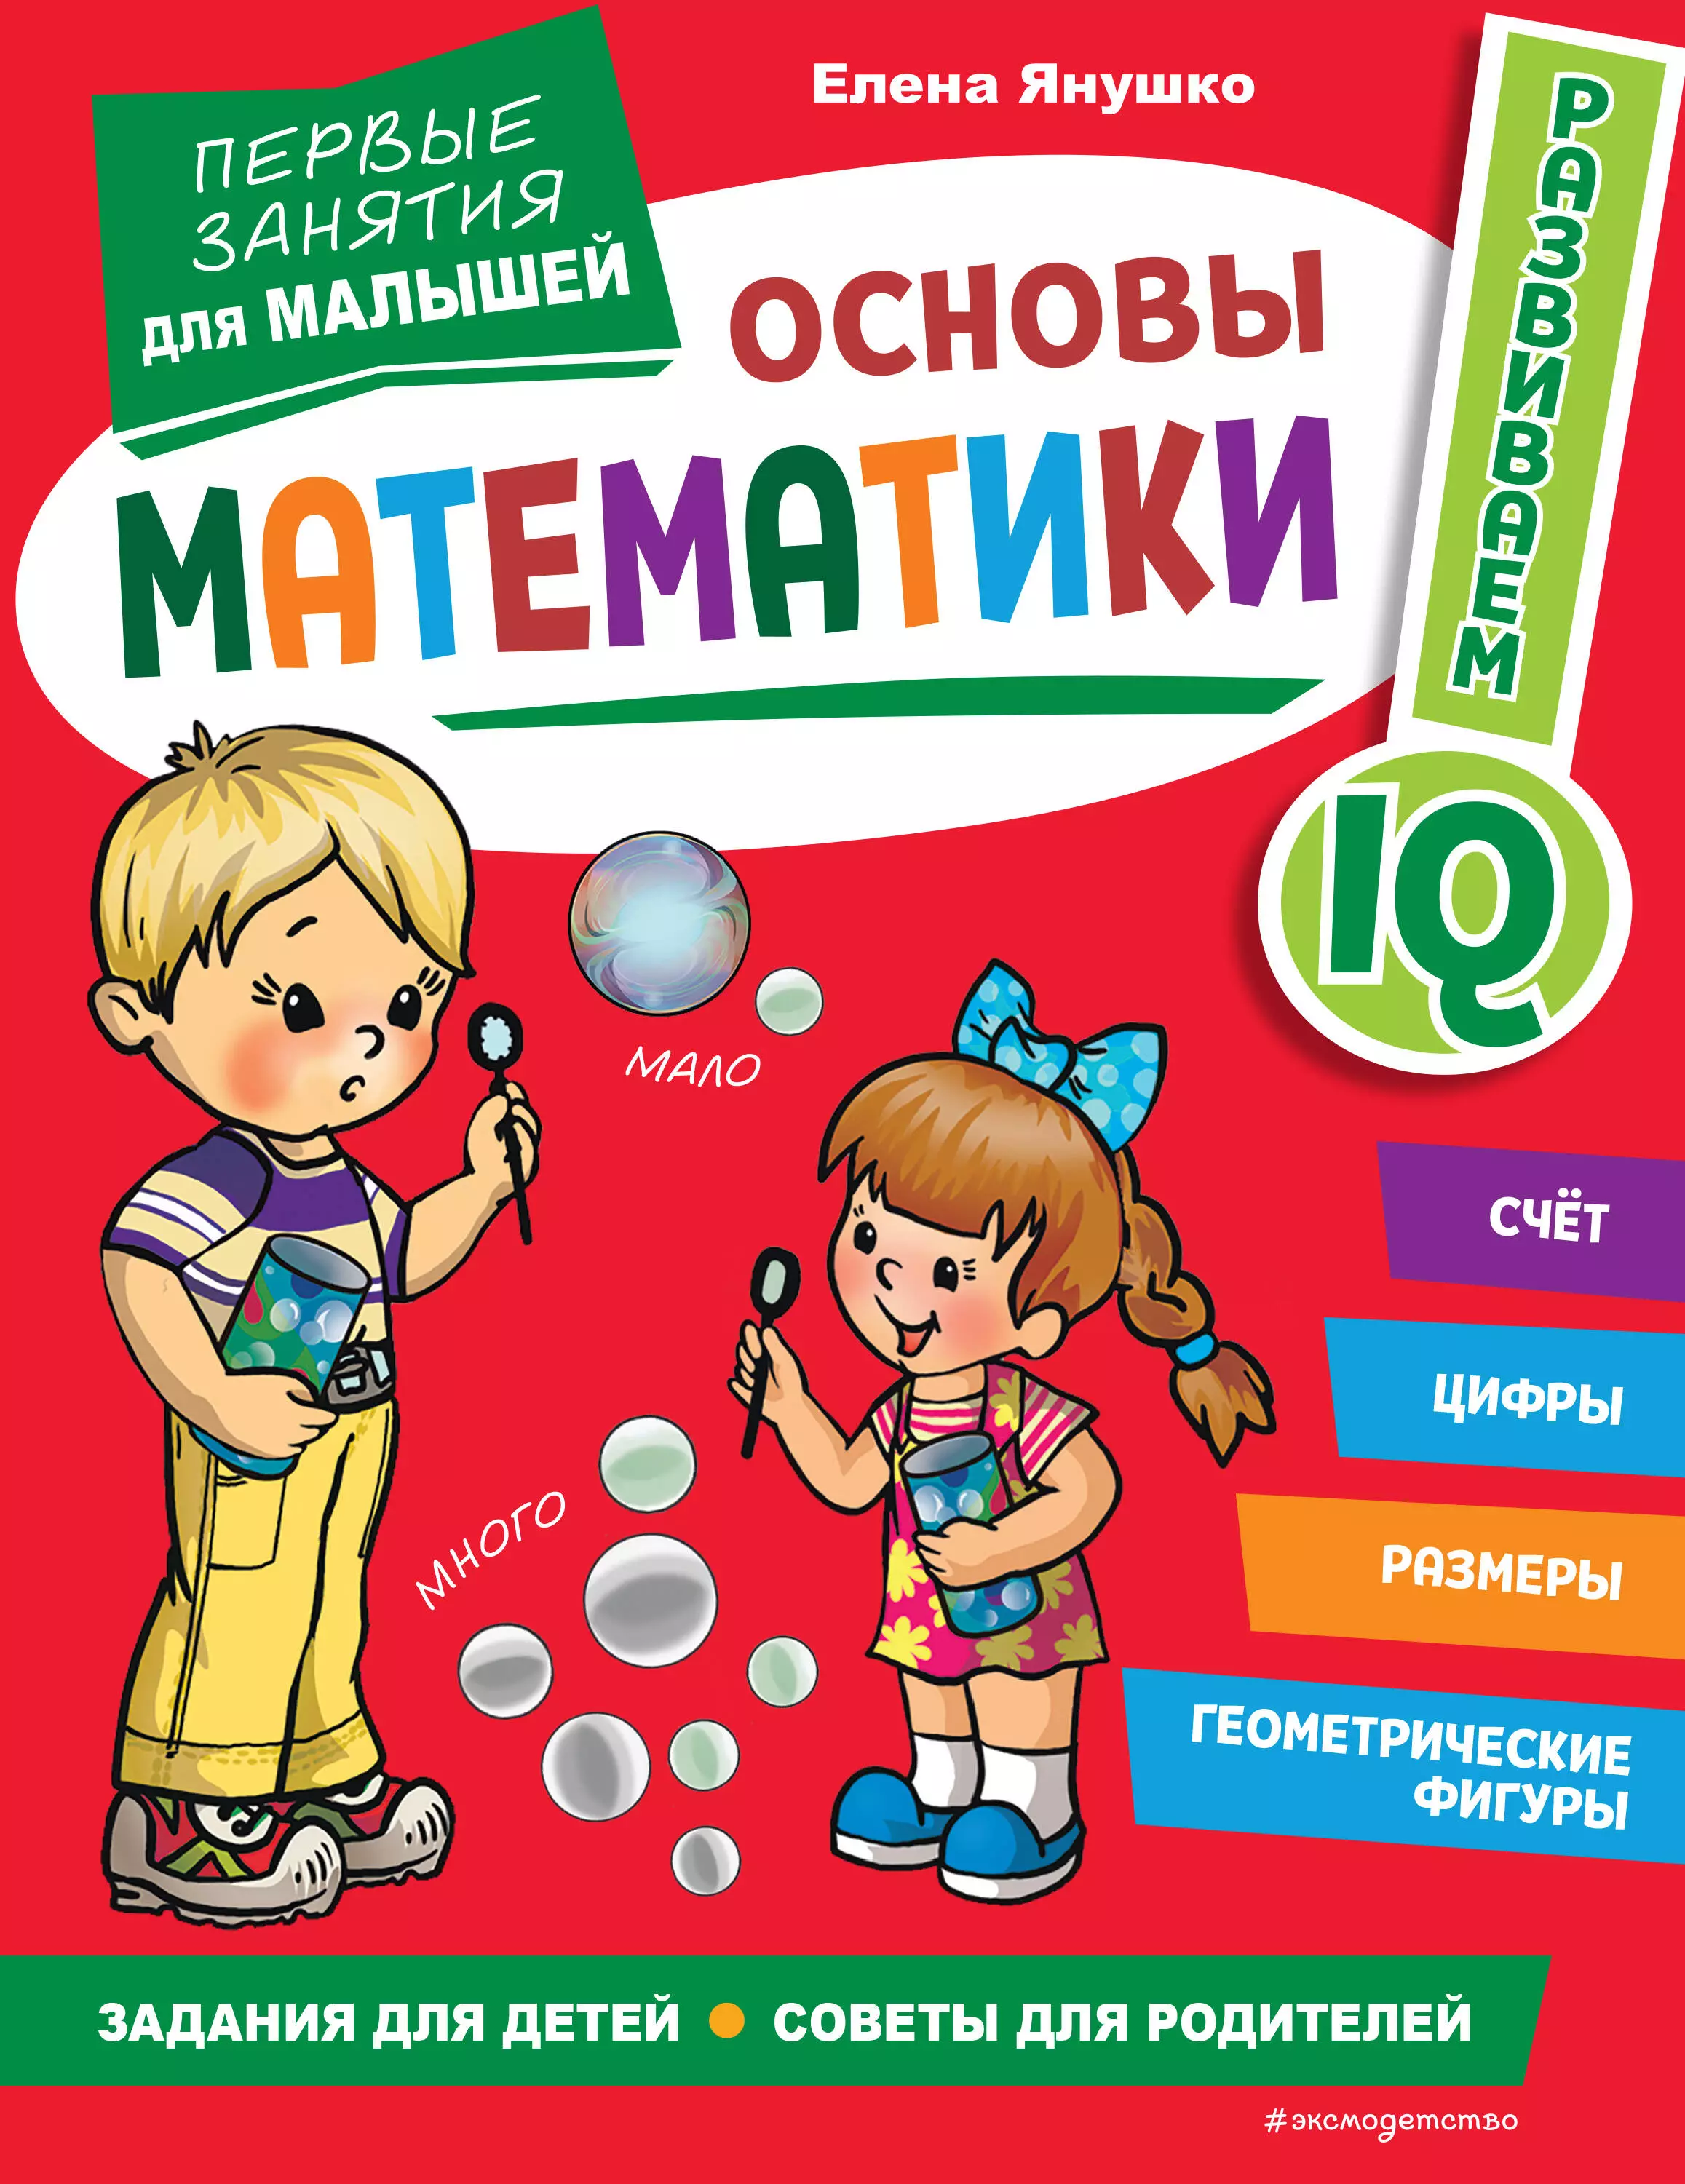 Янушко Елена Альбиновна - Основы математики. Первые занятия для малышей